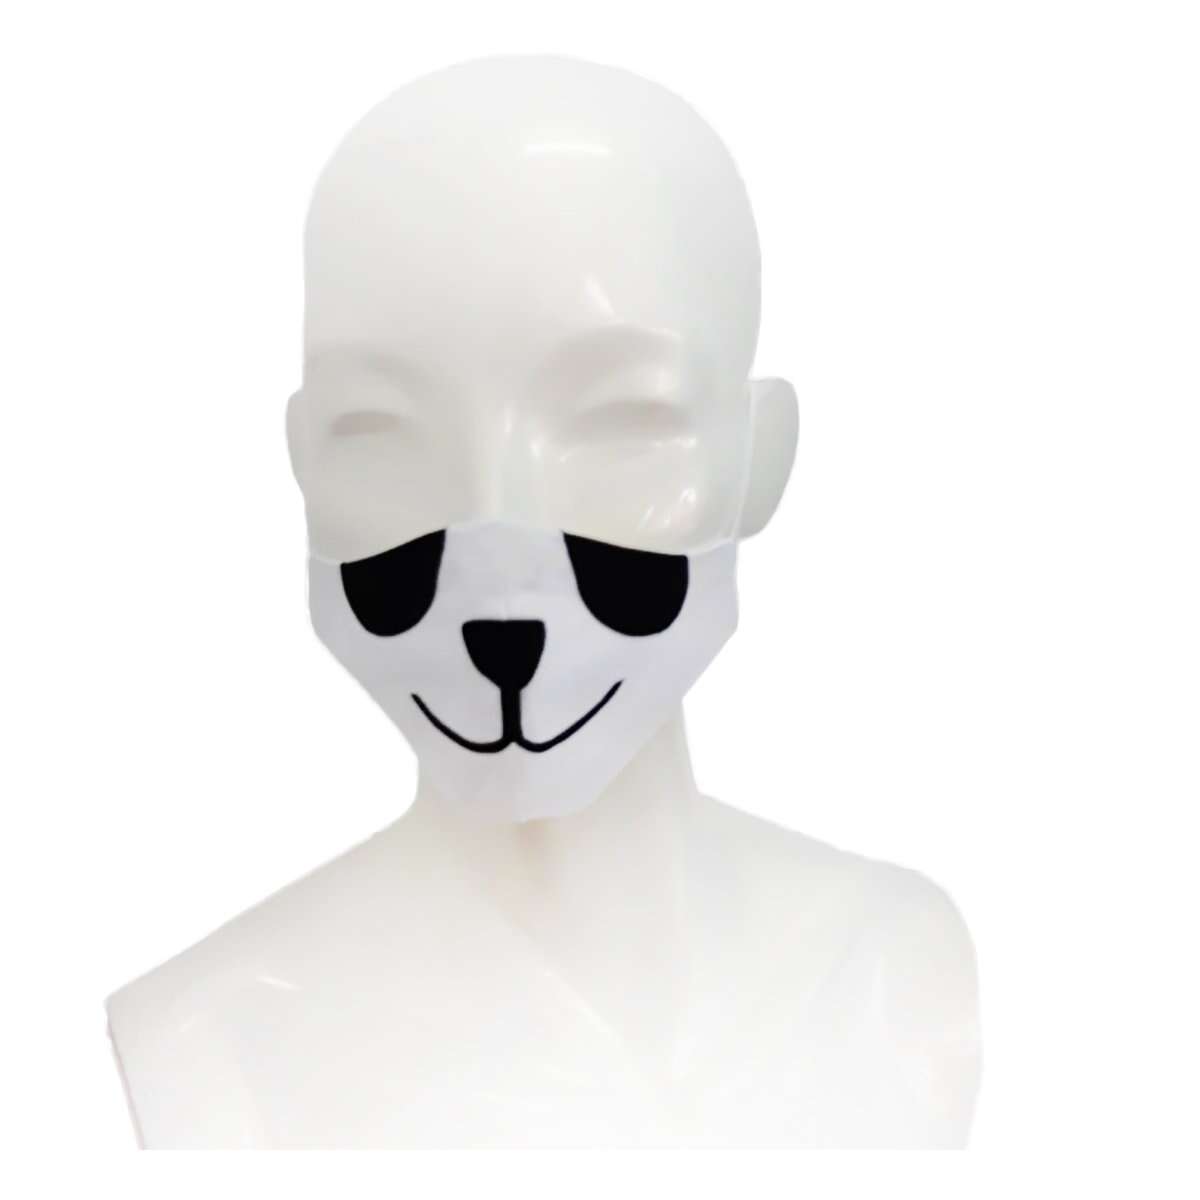 Masca protectie copii 6-12 ani, forma anatomica, reutilizabila, Noriel, Panda